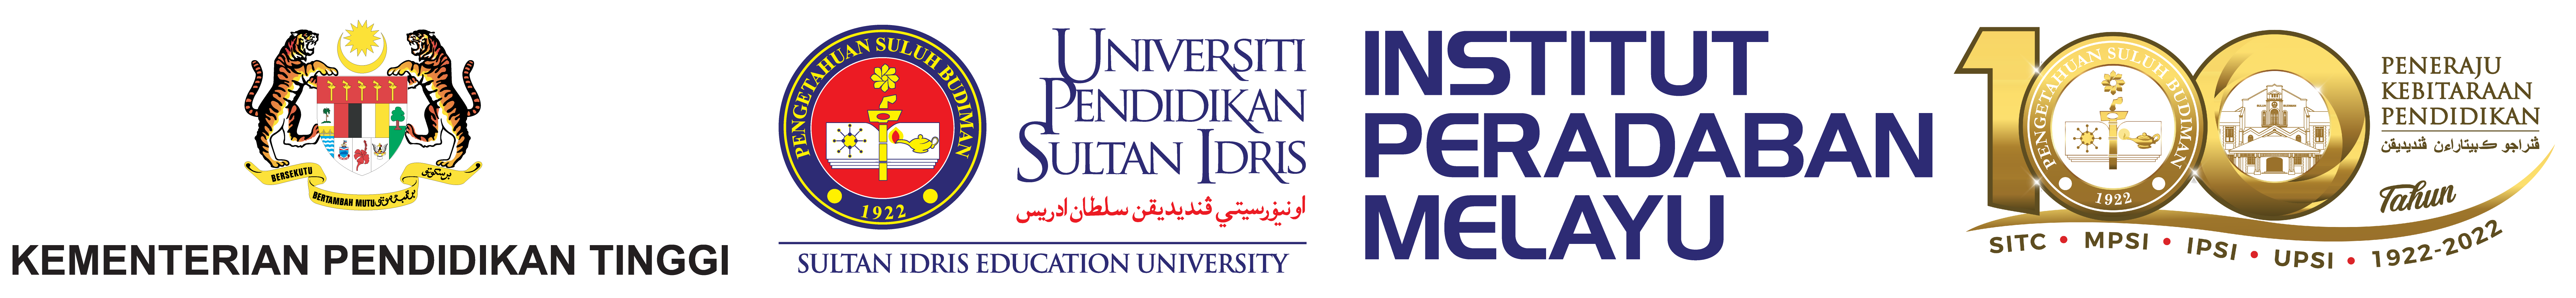 Institut Peradaban Melayu